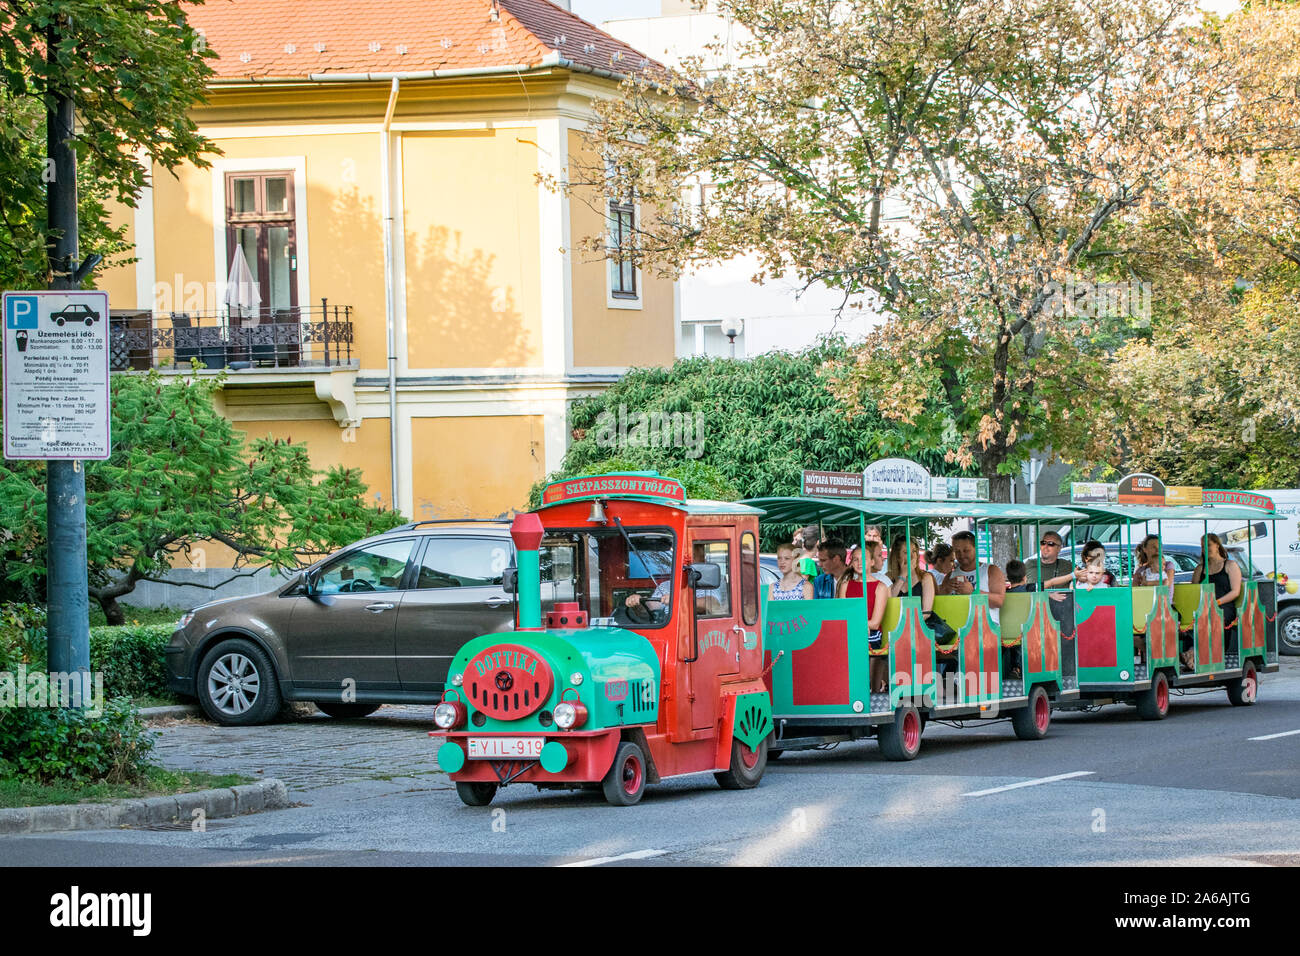 Kisvonat Eger, turisti in una escursione turistica in treno in Eger, Ungheria Foto Stock